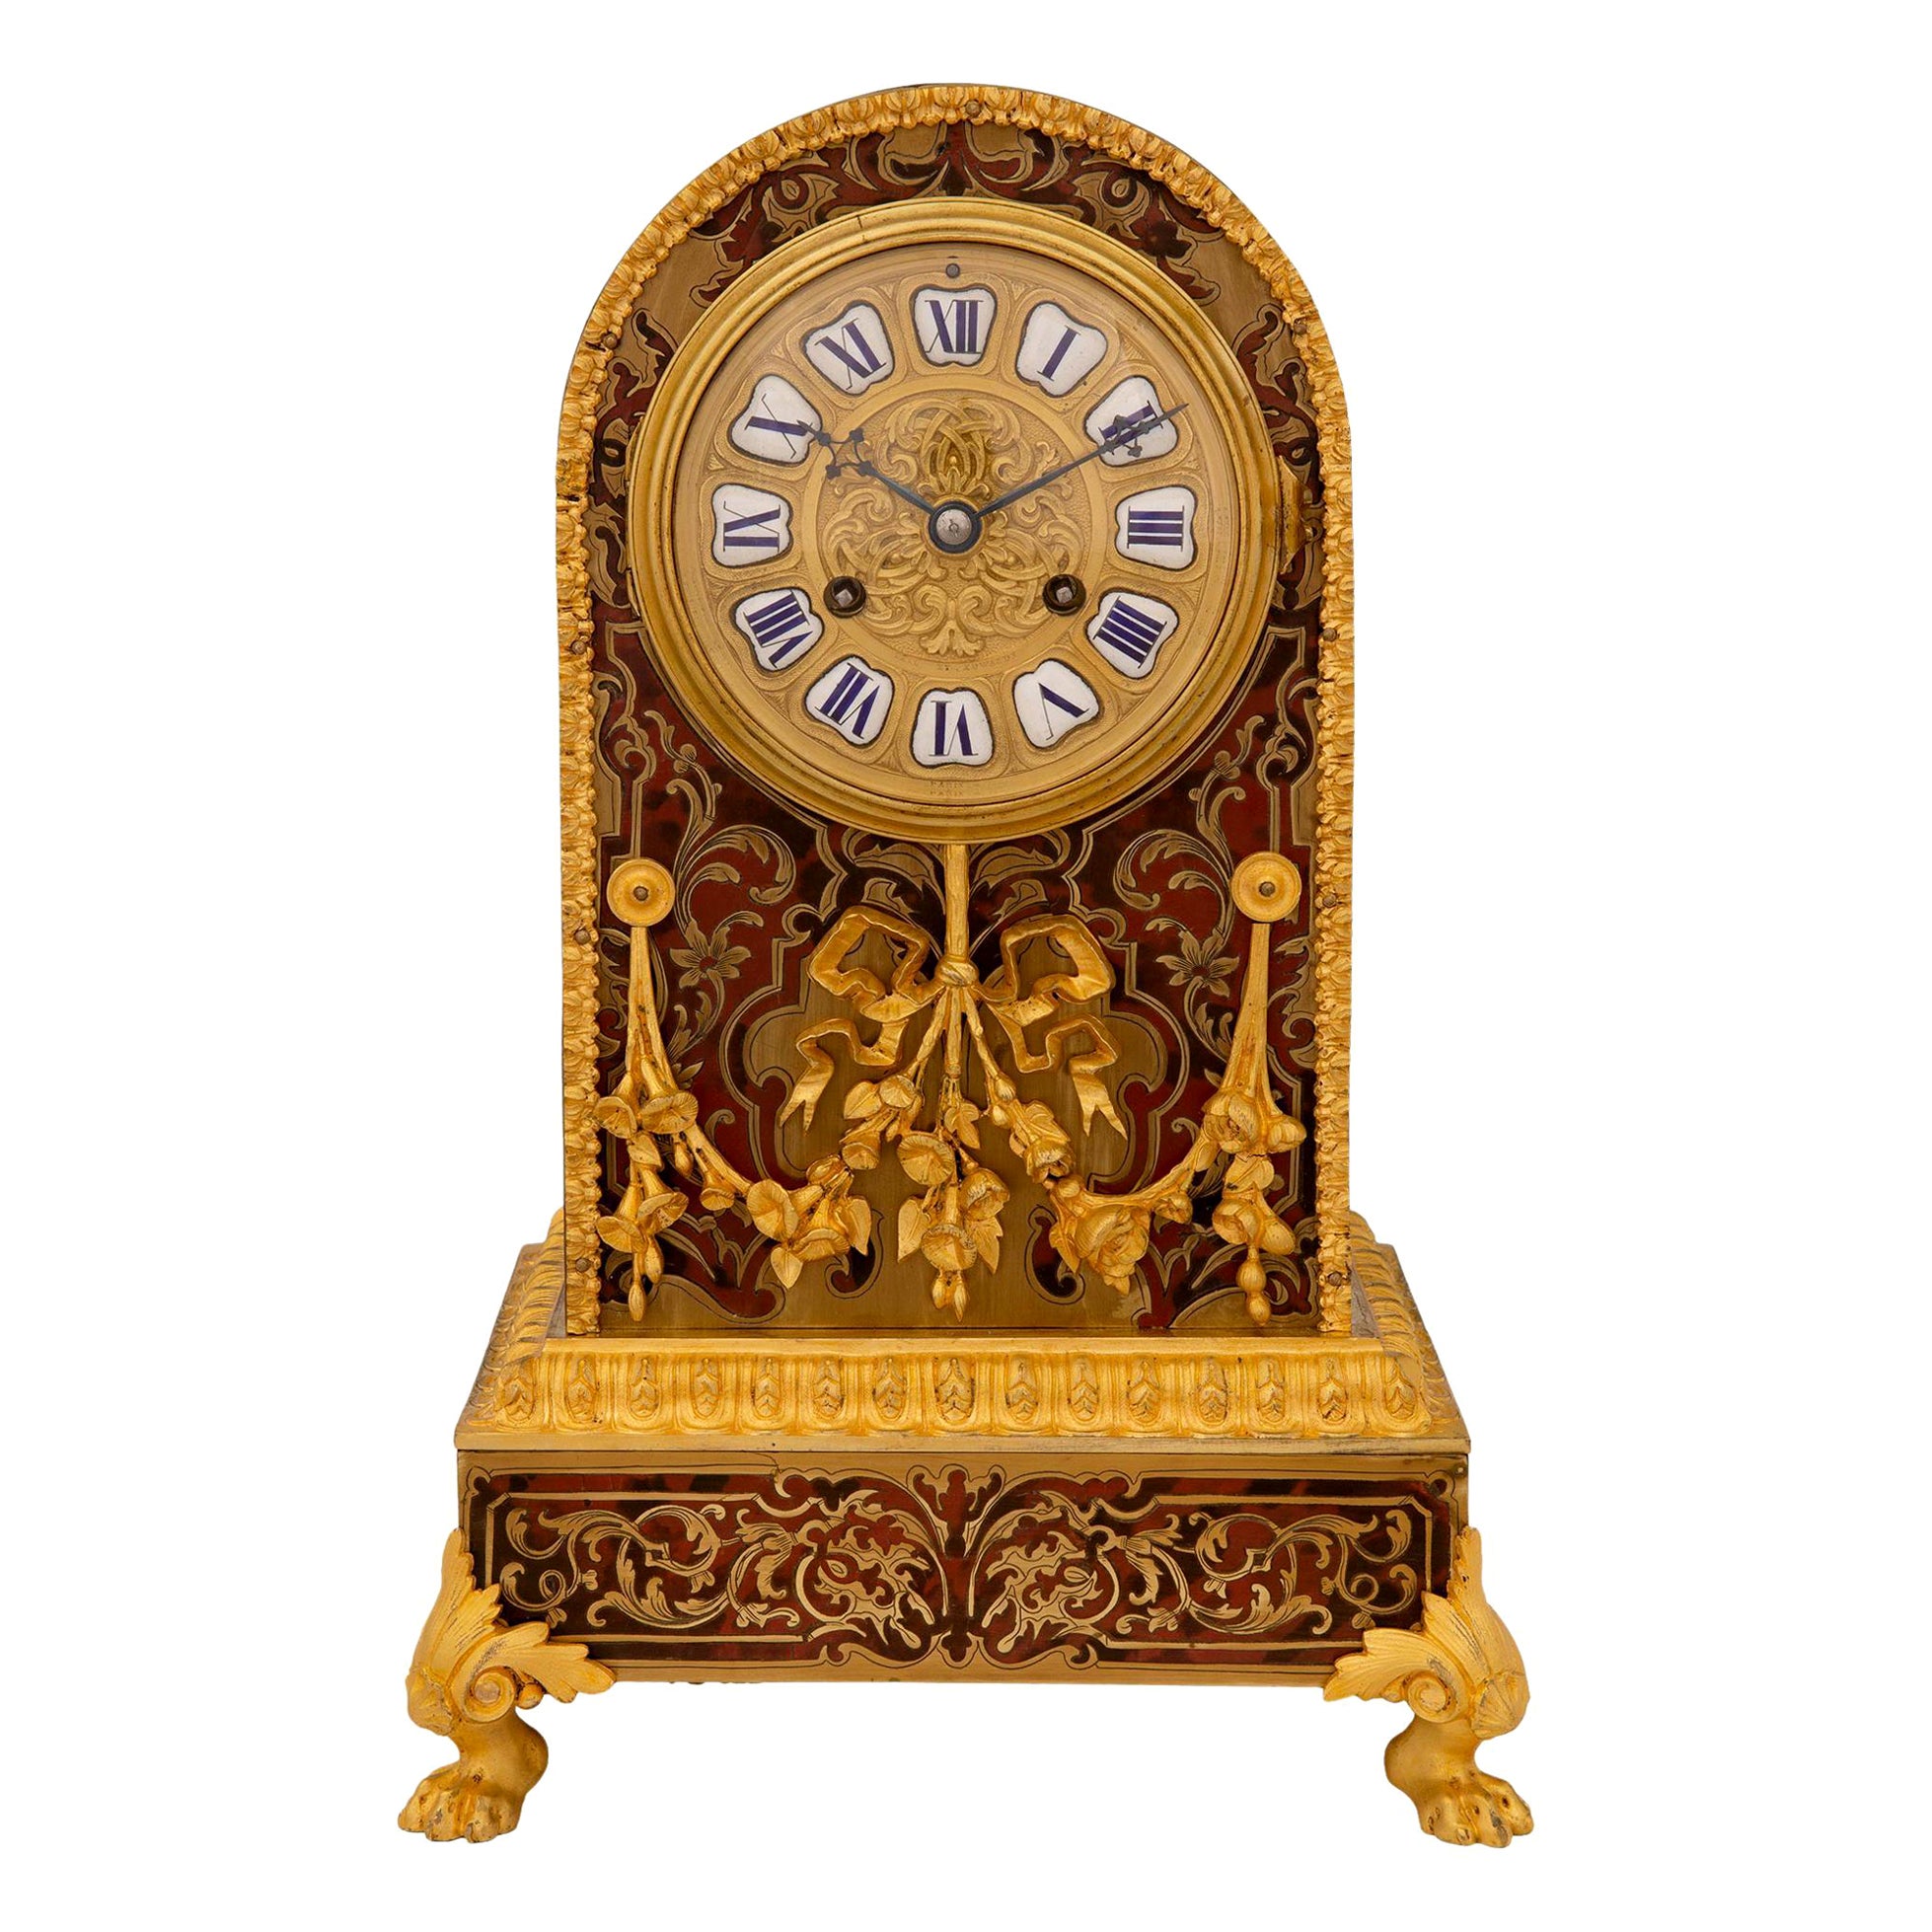 Horloge Boulle française du 19ème siècle d'époque Napoléon III